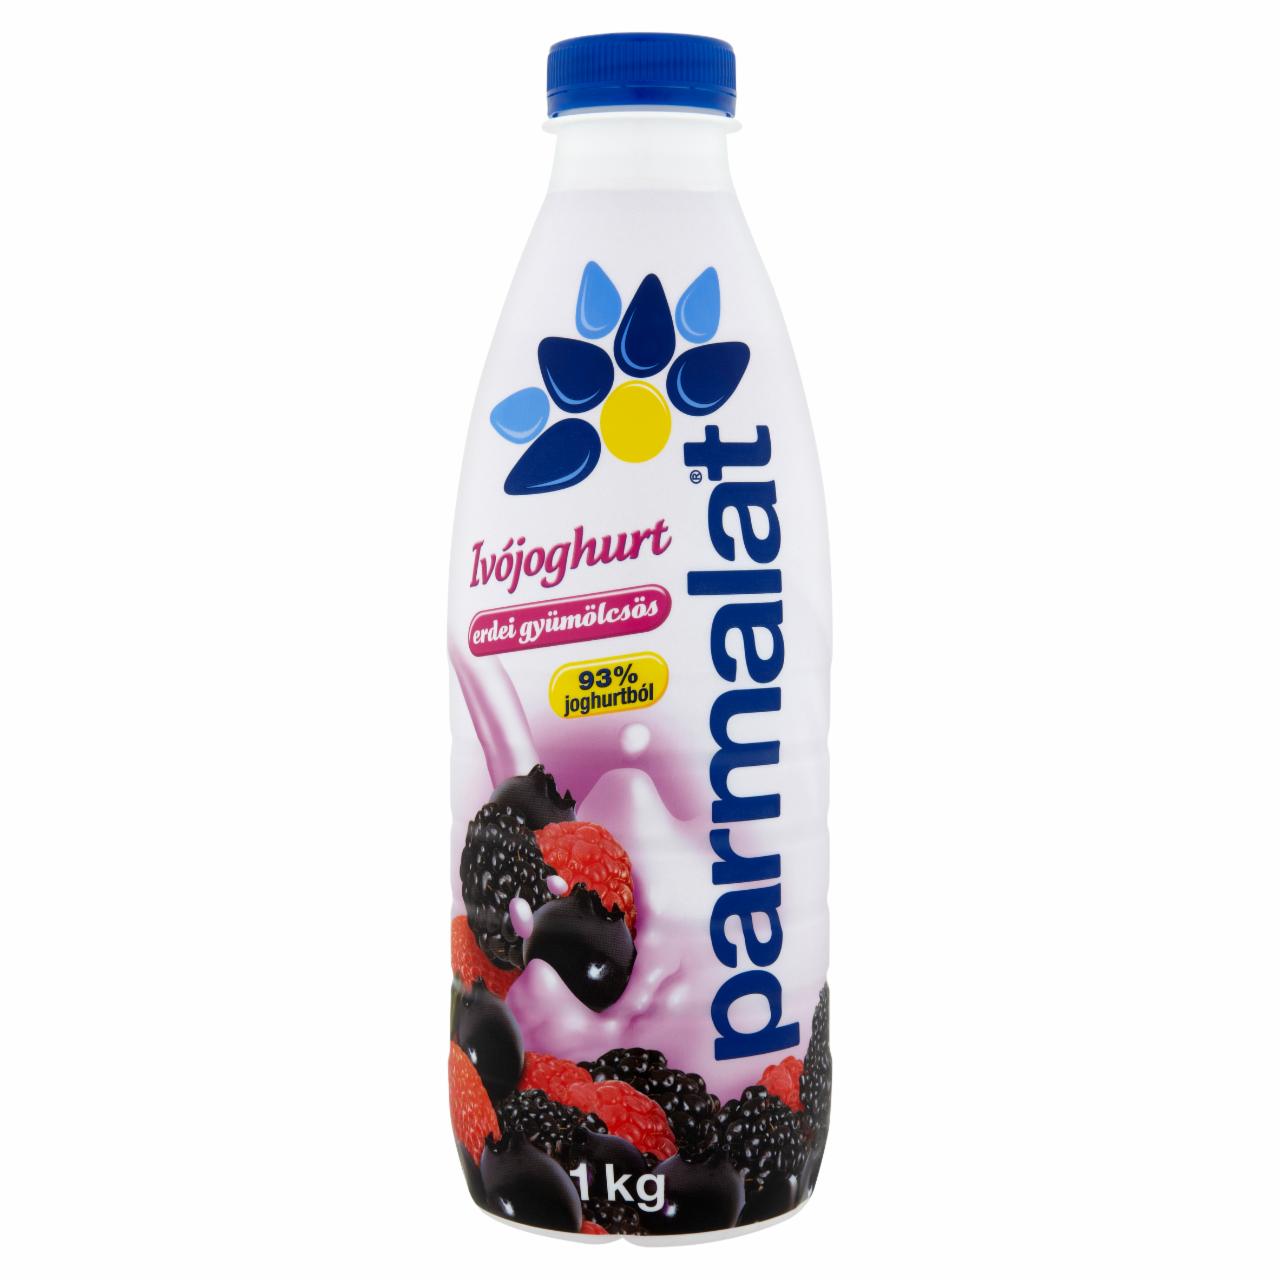 Képek - Parmalat erdei gyümölcsös ivójoghurt 1 kg